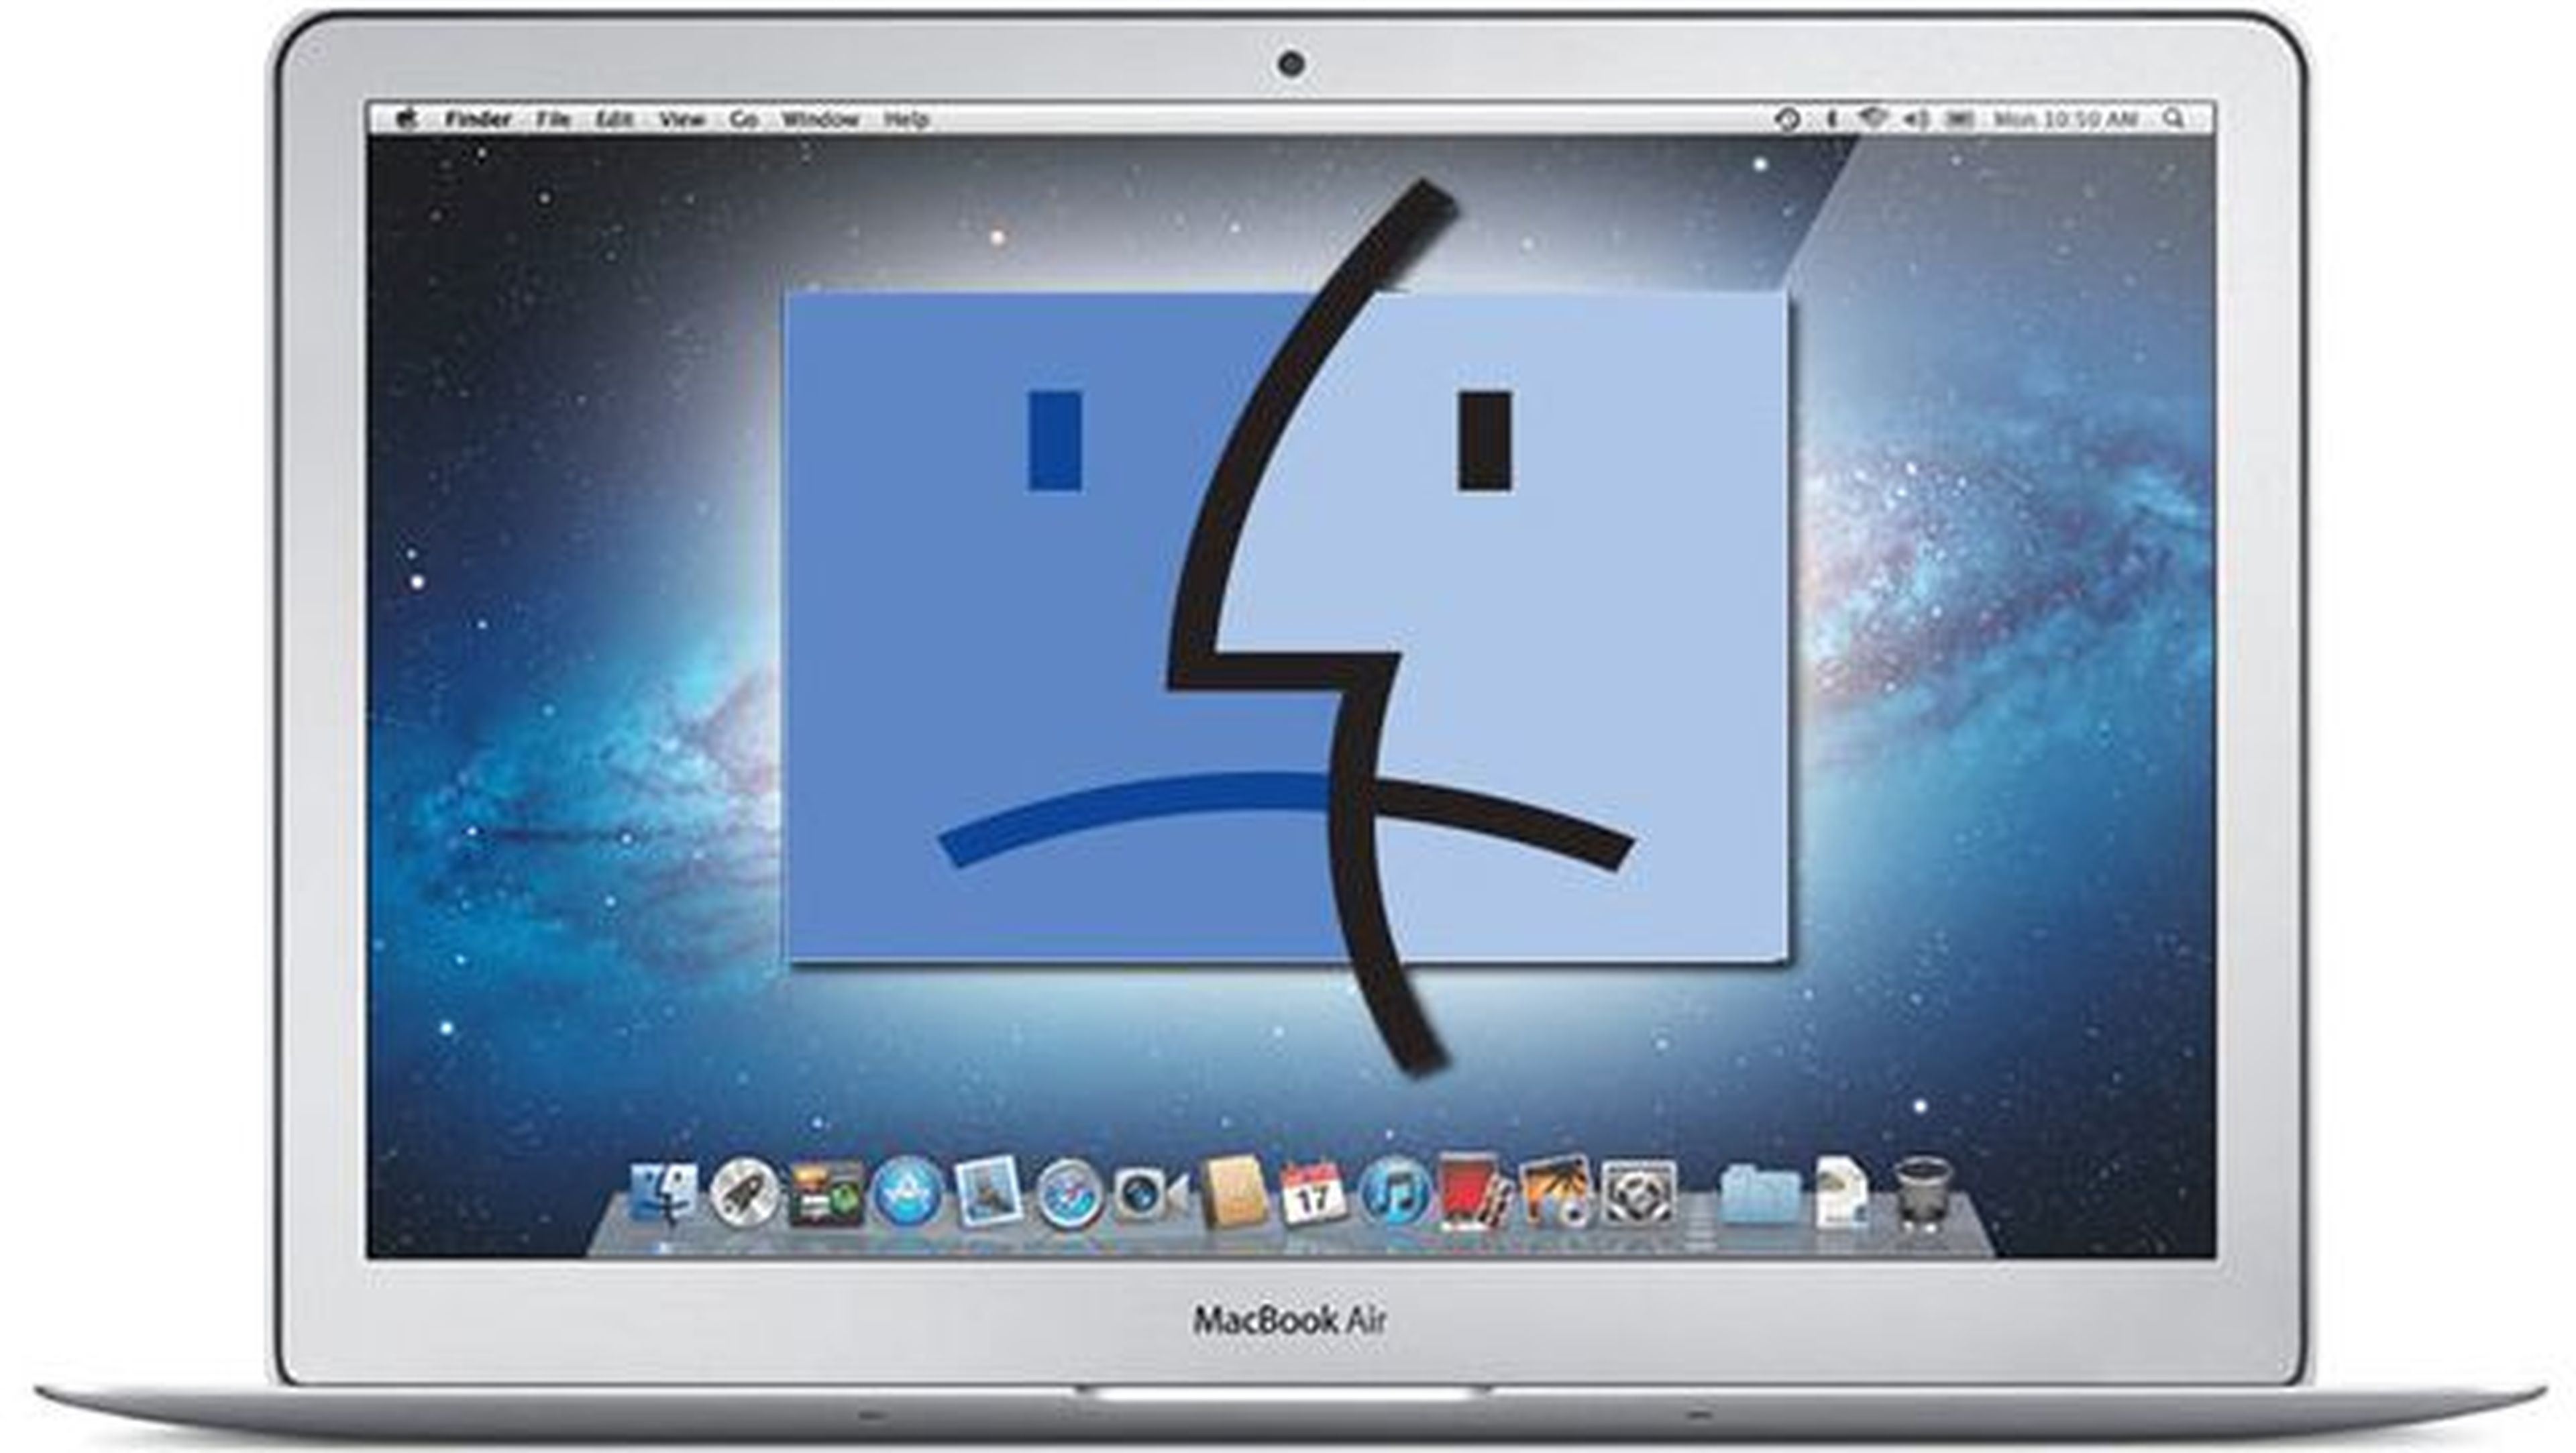 ¡Cuidado! Un nuevo virus podría controlar tu Mac a distancia